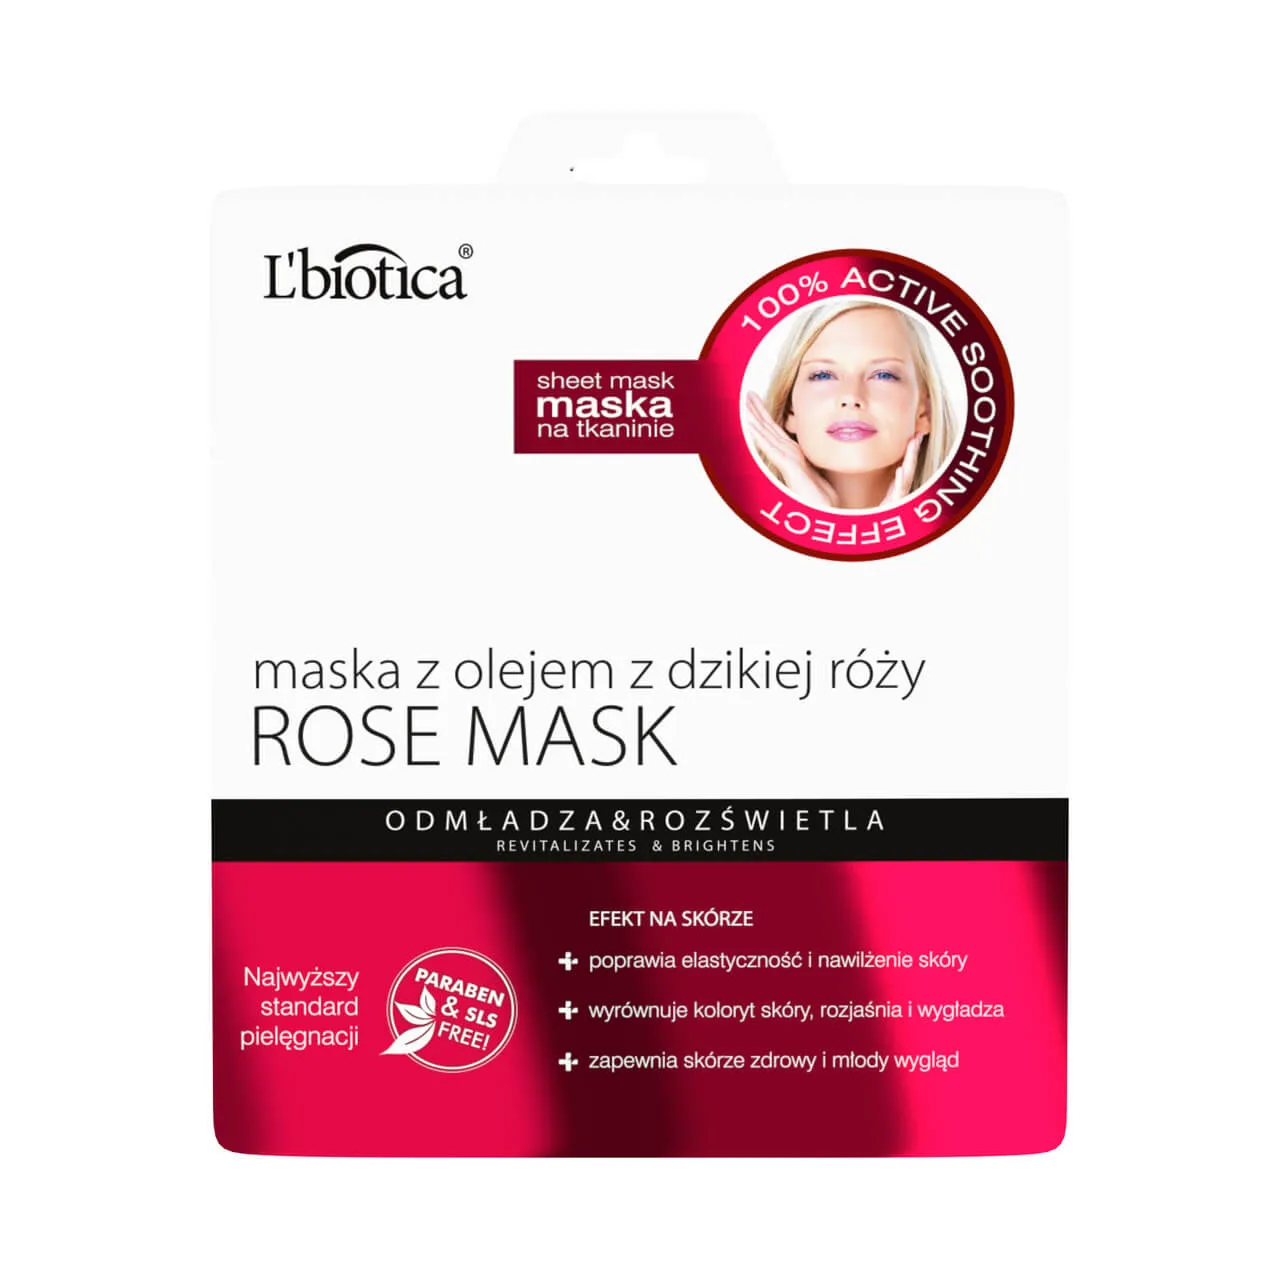 L'Biotica Rose Mask, maska z olejem z dzikiej róży, 23 ml